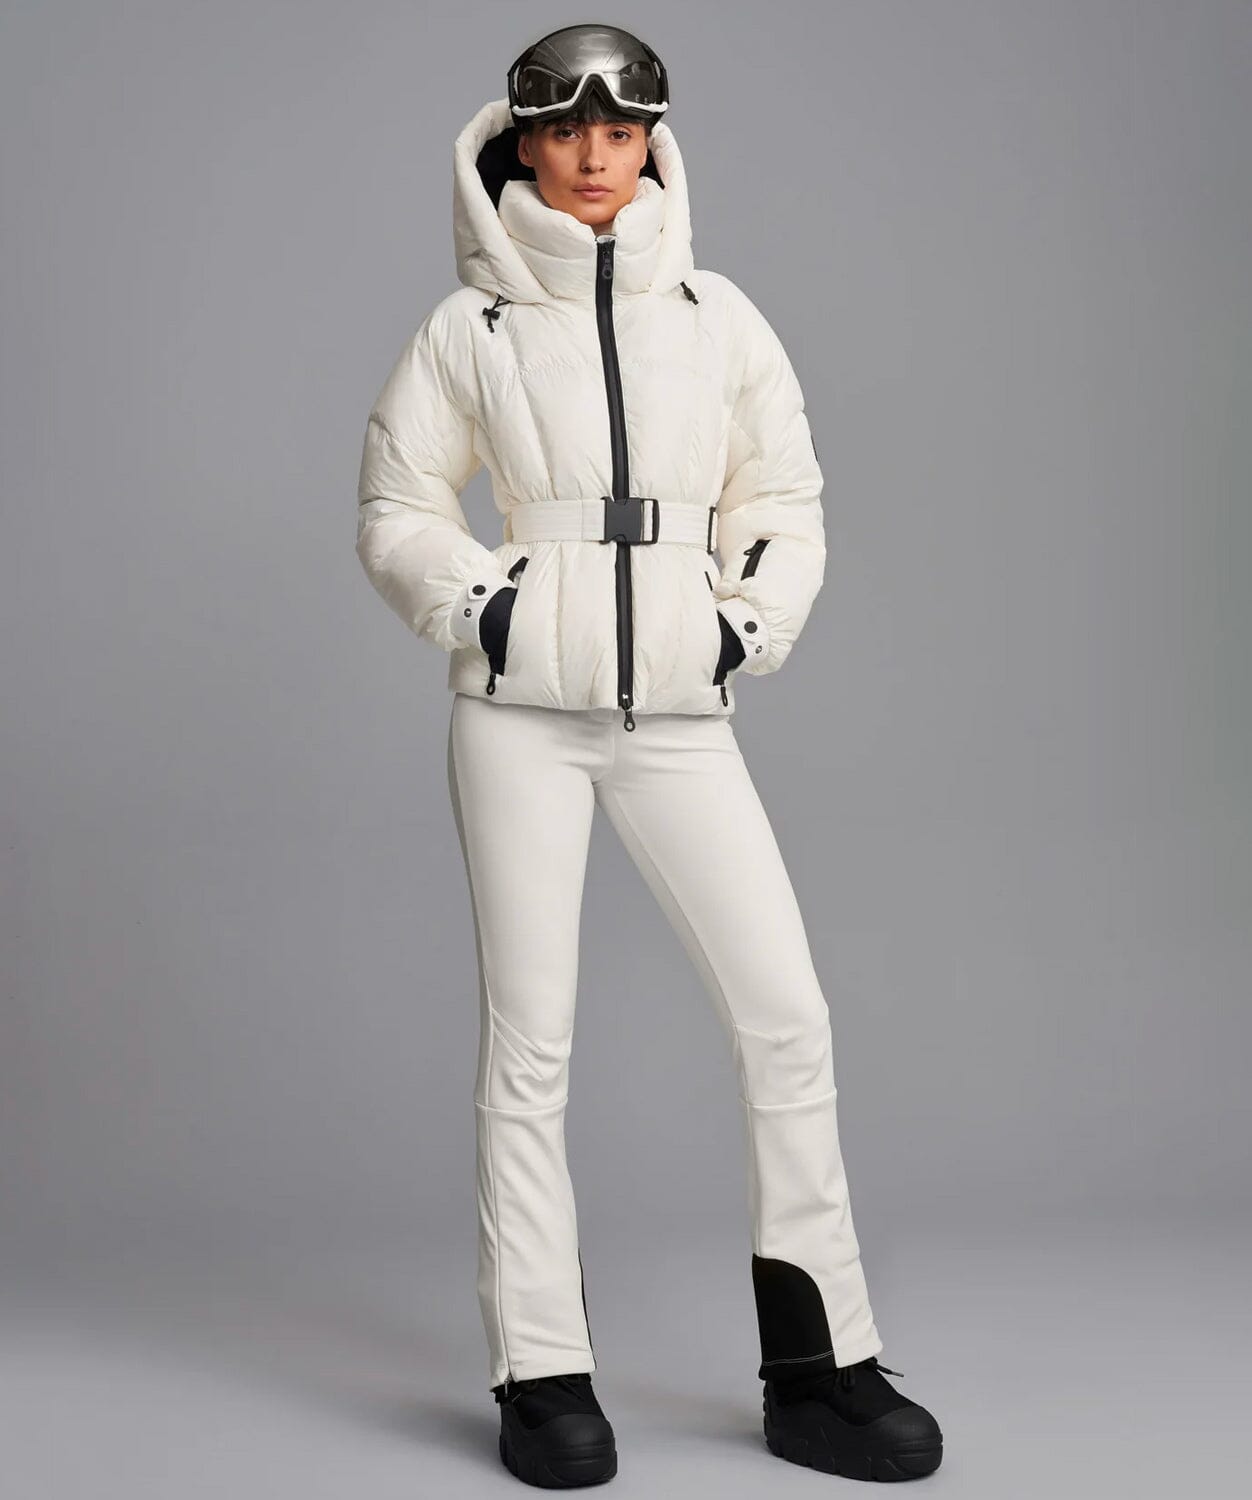 http://snowsport.com/cdn/shop/products/cordova-monterosa-ski-jacket-ski-jackets-cordova-646943.jpg?v=1684988335